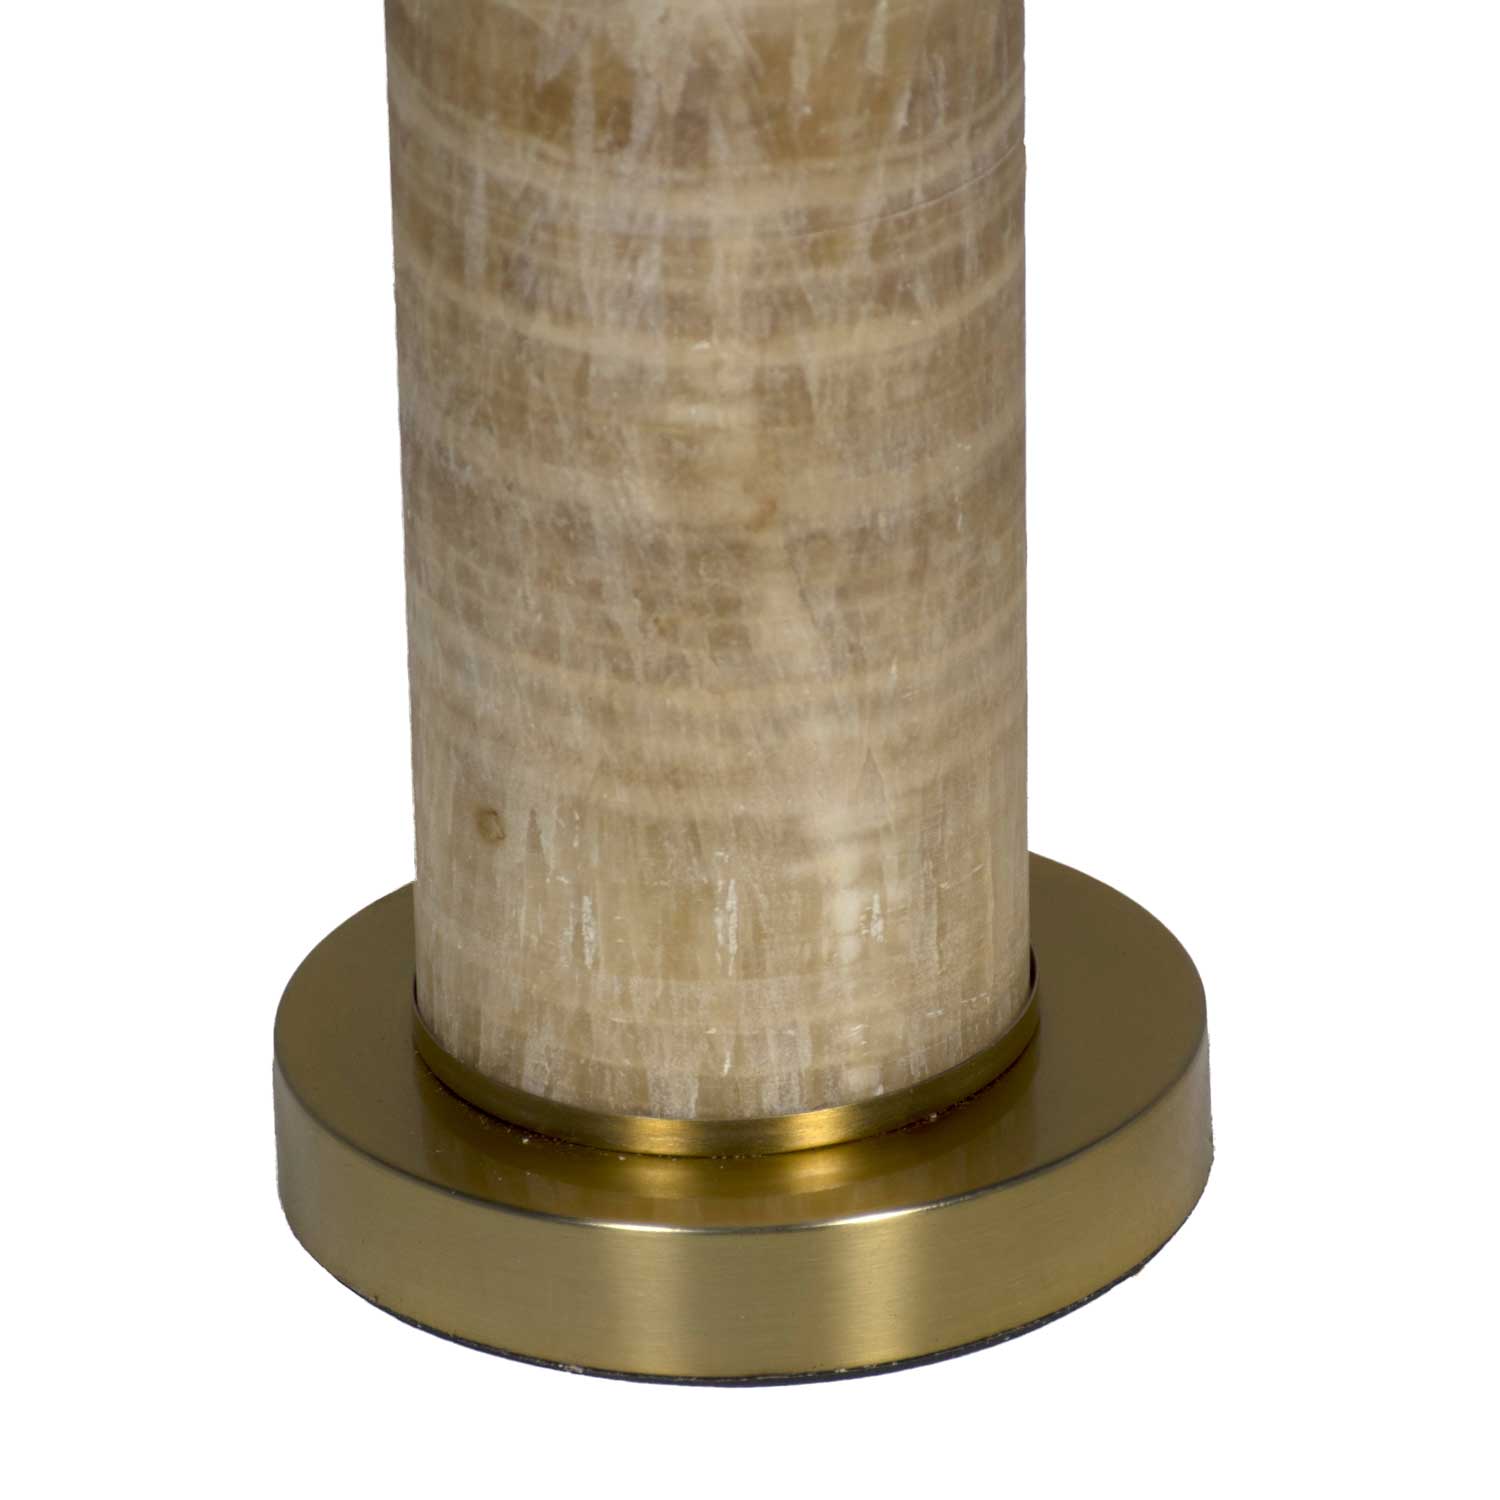 soloman table lamp – white thumbnail image